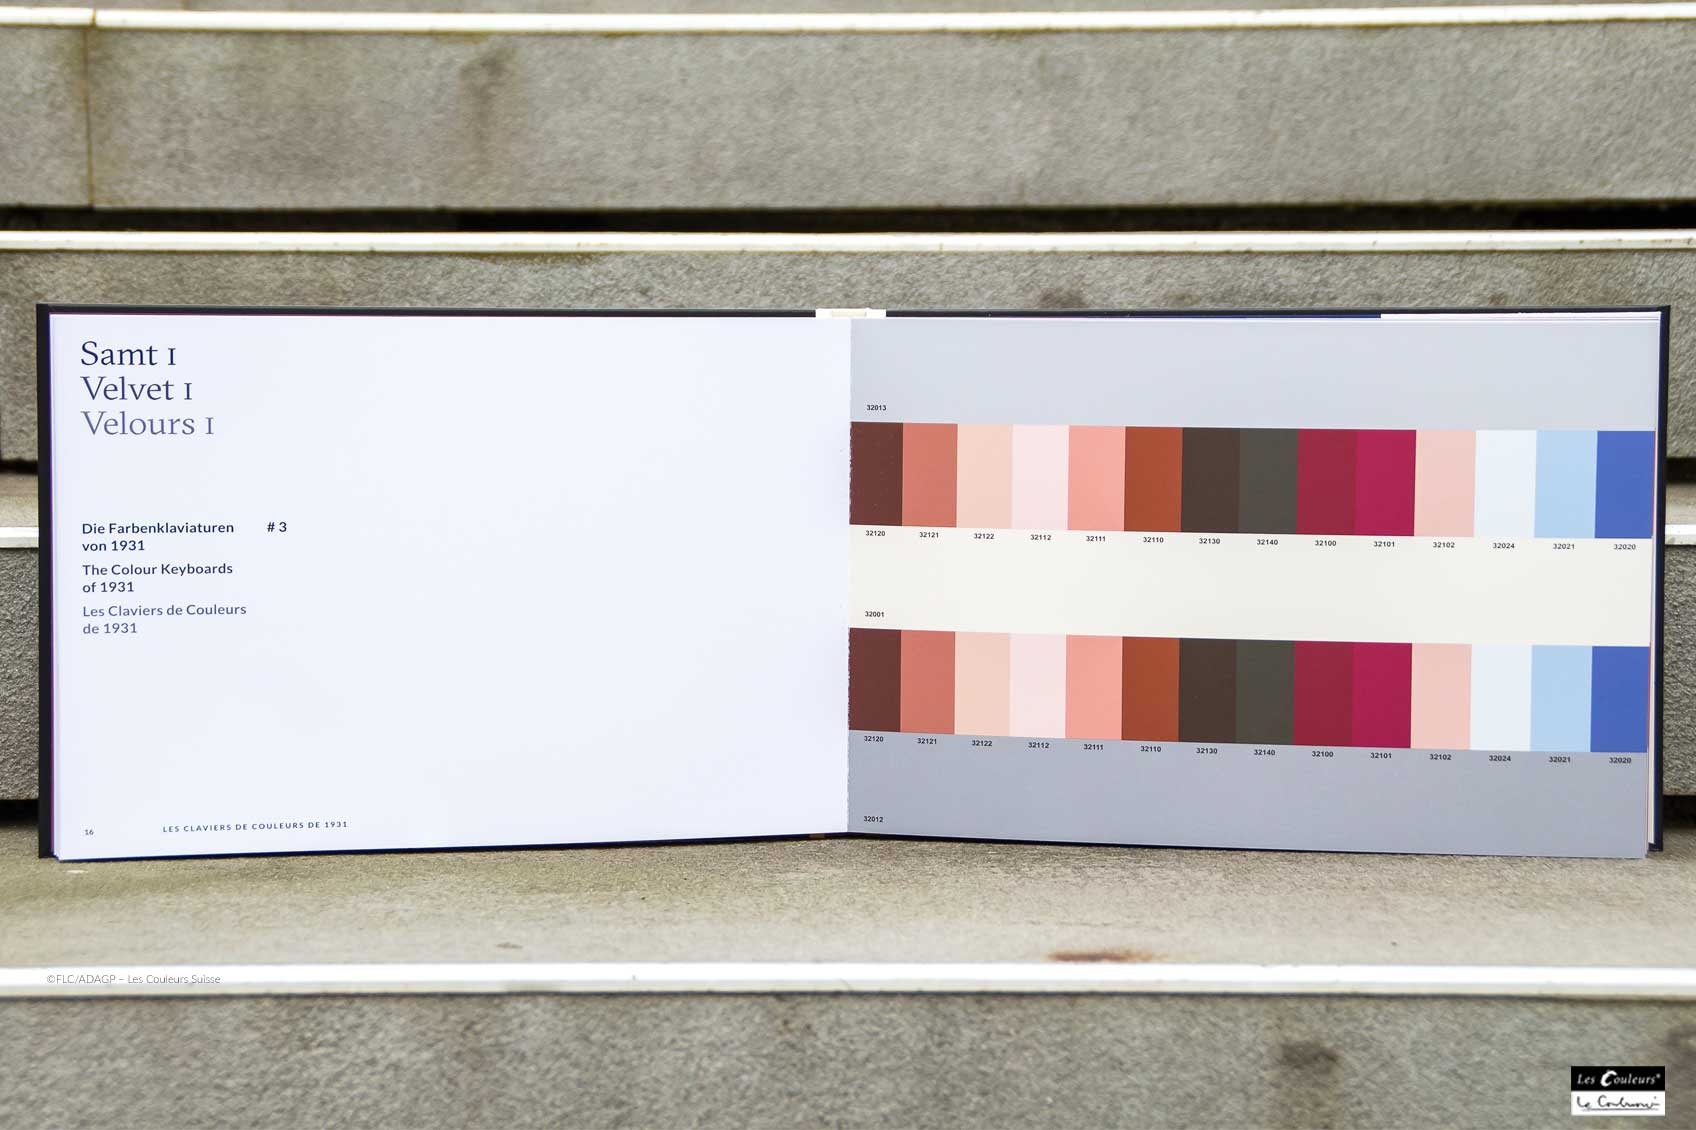 Le Corbusier claviers de couleurs velours ©FLC/ADAGP – Les Couleurs Suisse